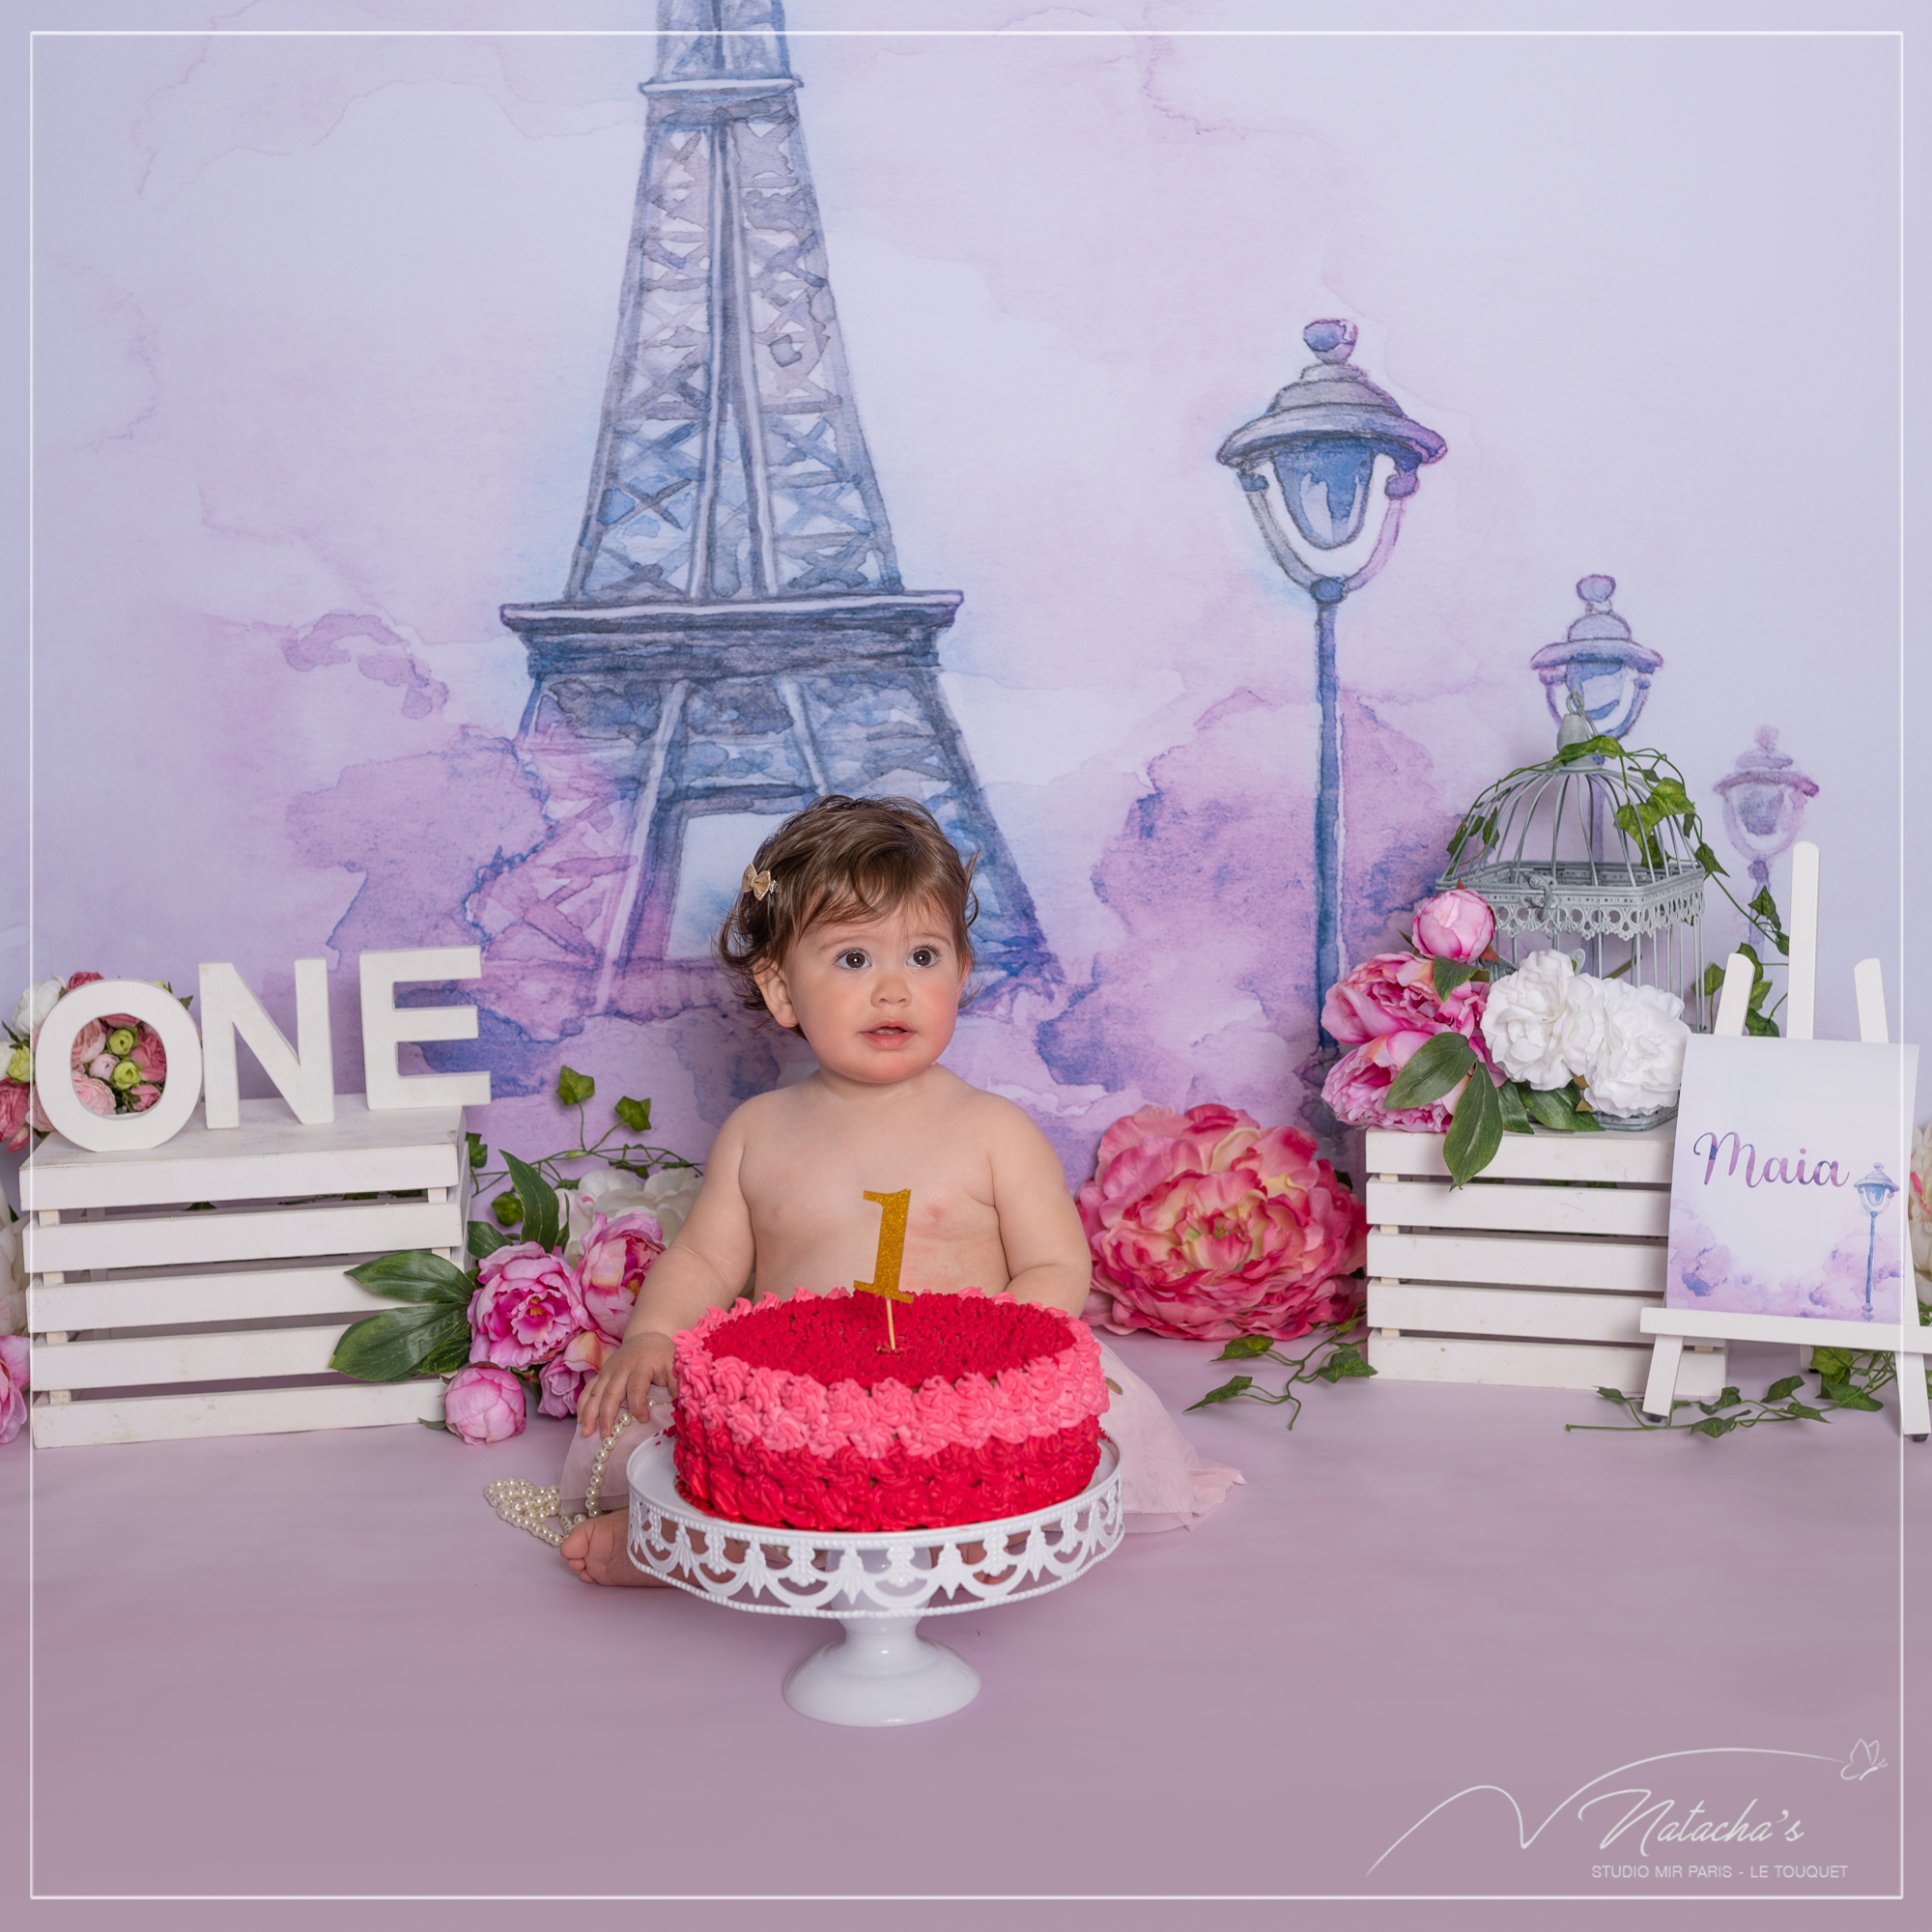 Photographe bébé : Smash the cake au thème Tour Eiffel près de Paris